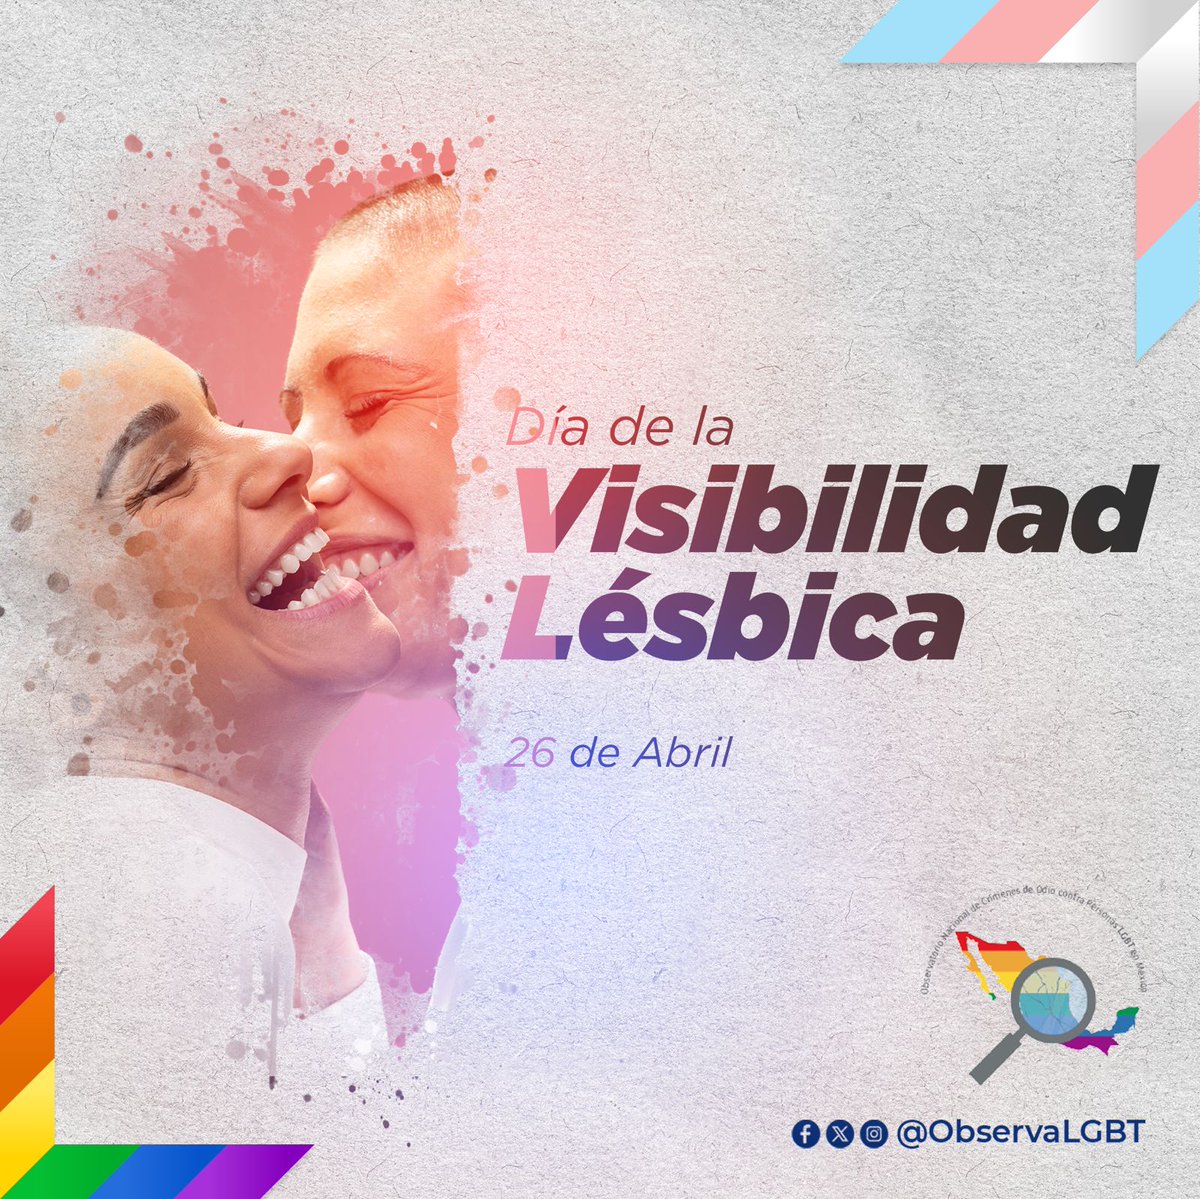 ¡Seamos visibLES hoy y todo el año! 🏳️‍🌈 #VisibilidadLésbica